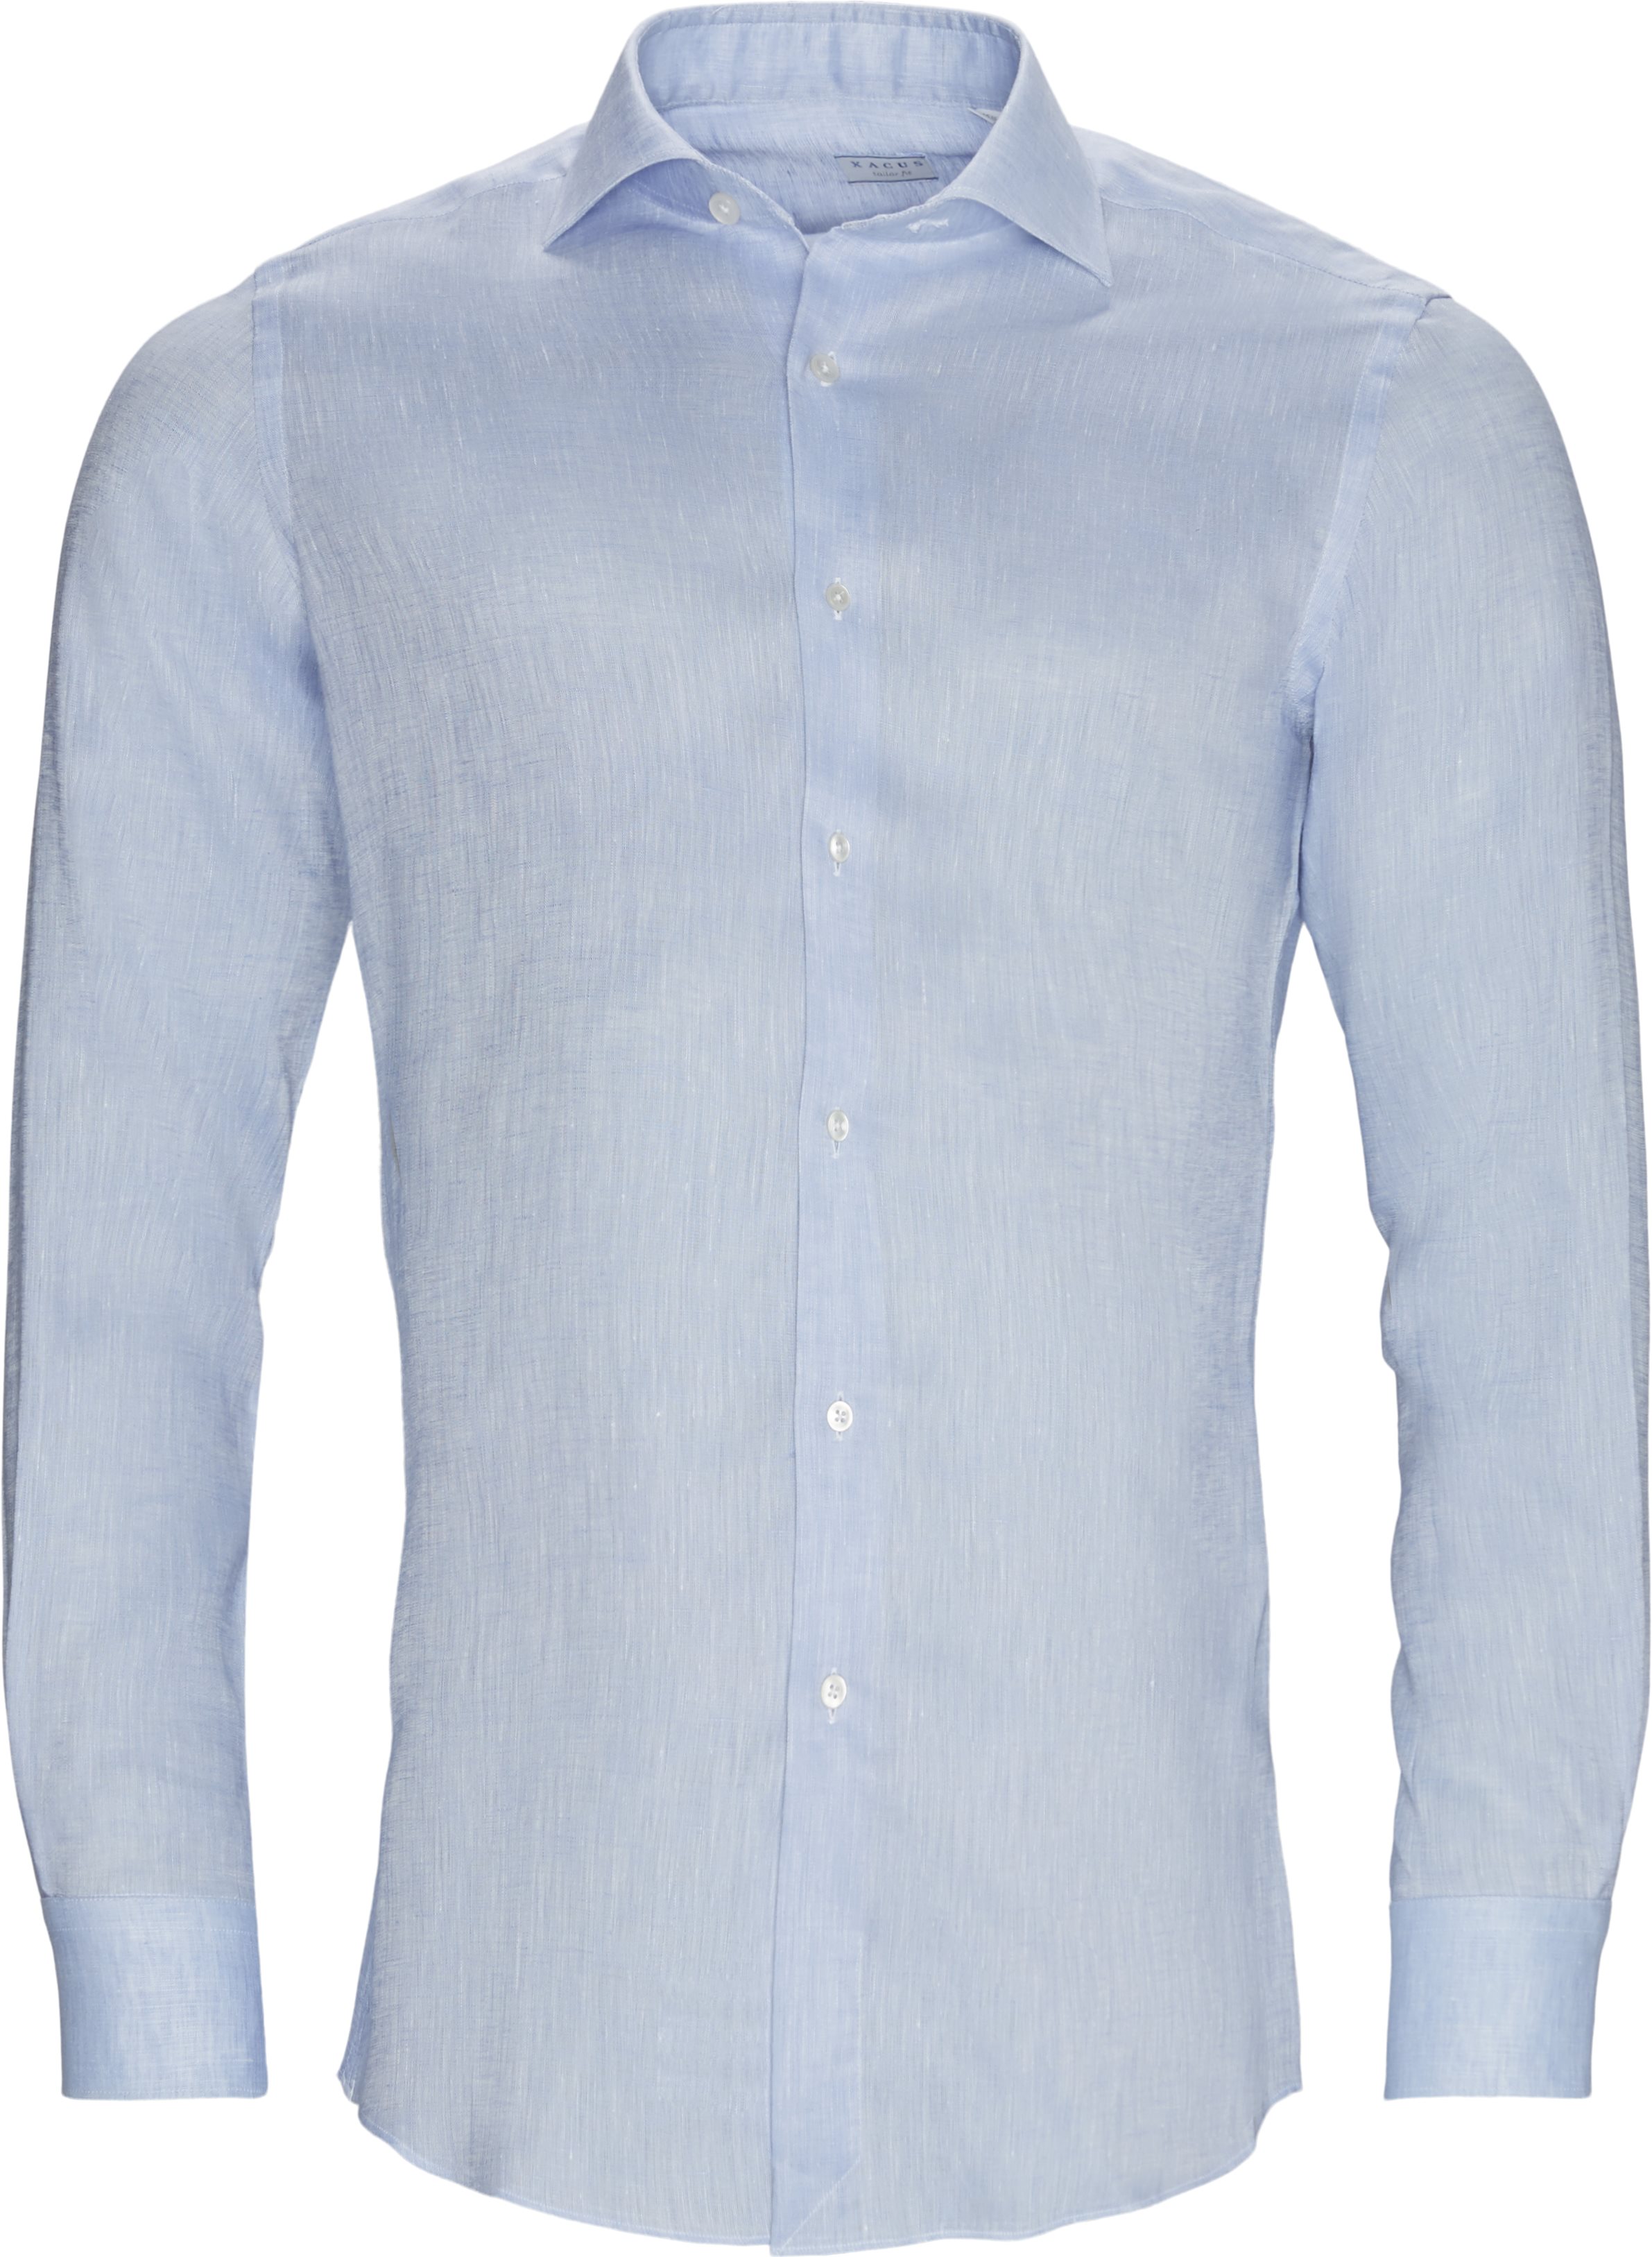 Hør skjorte - Skjorter - Contemporary fit - Blå